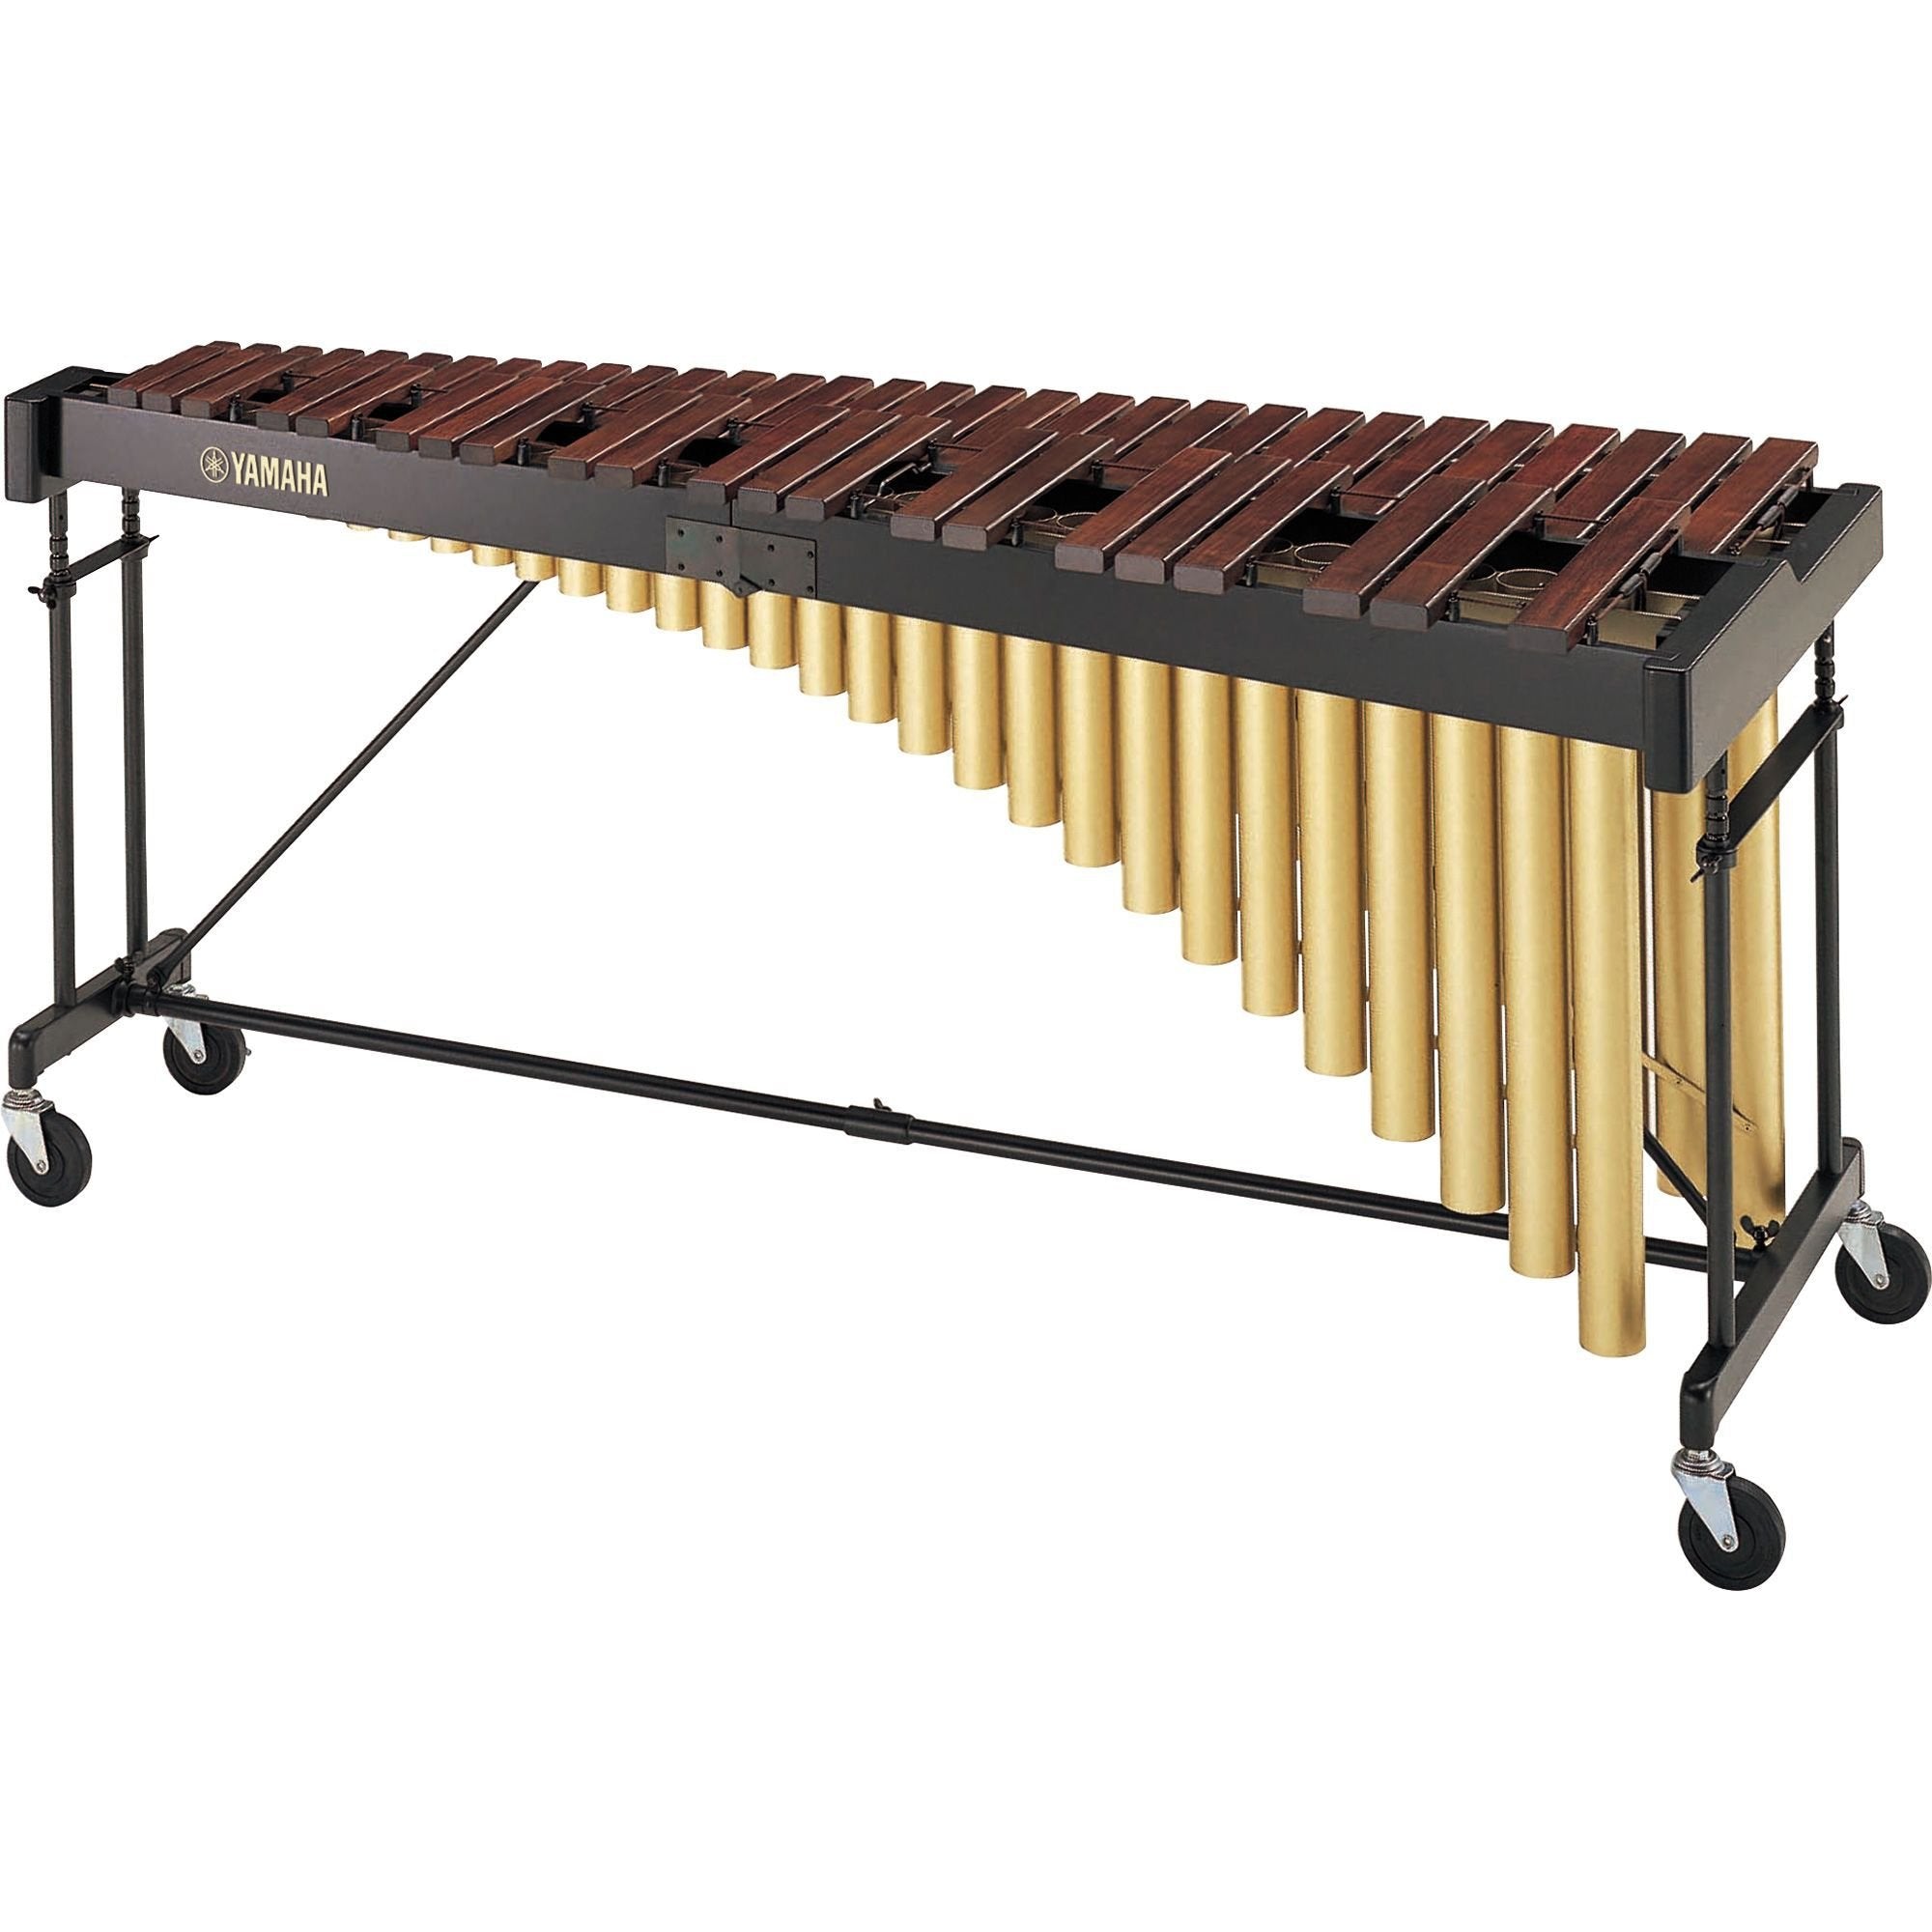 Yamaha - YM-2400R - Rosewood Marimba (4 1/3-Octave)-Percussion-Yamaha-Music Elements